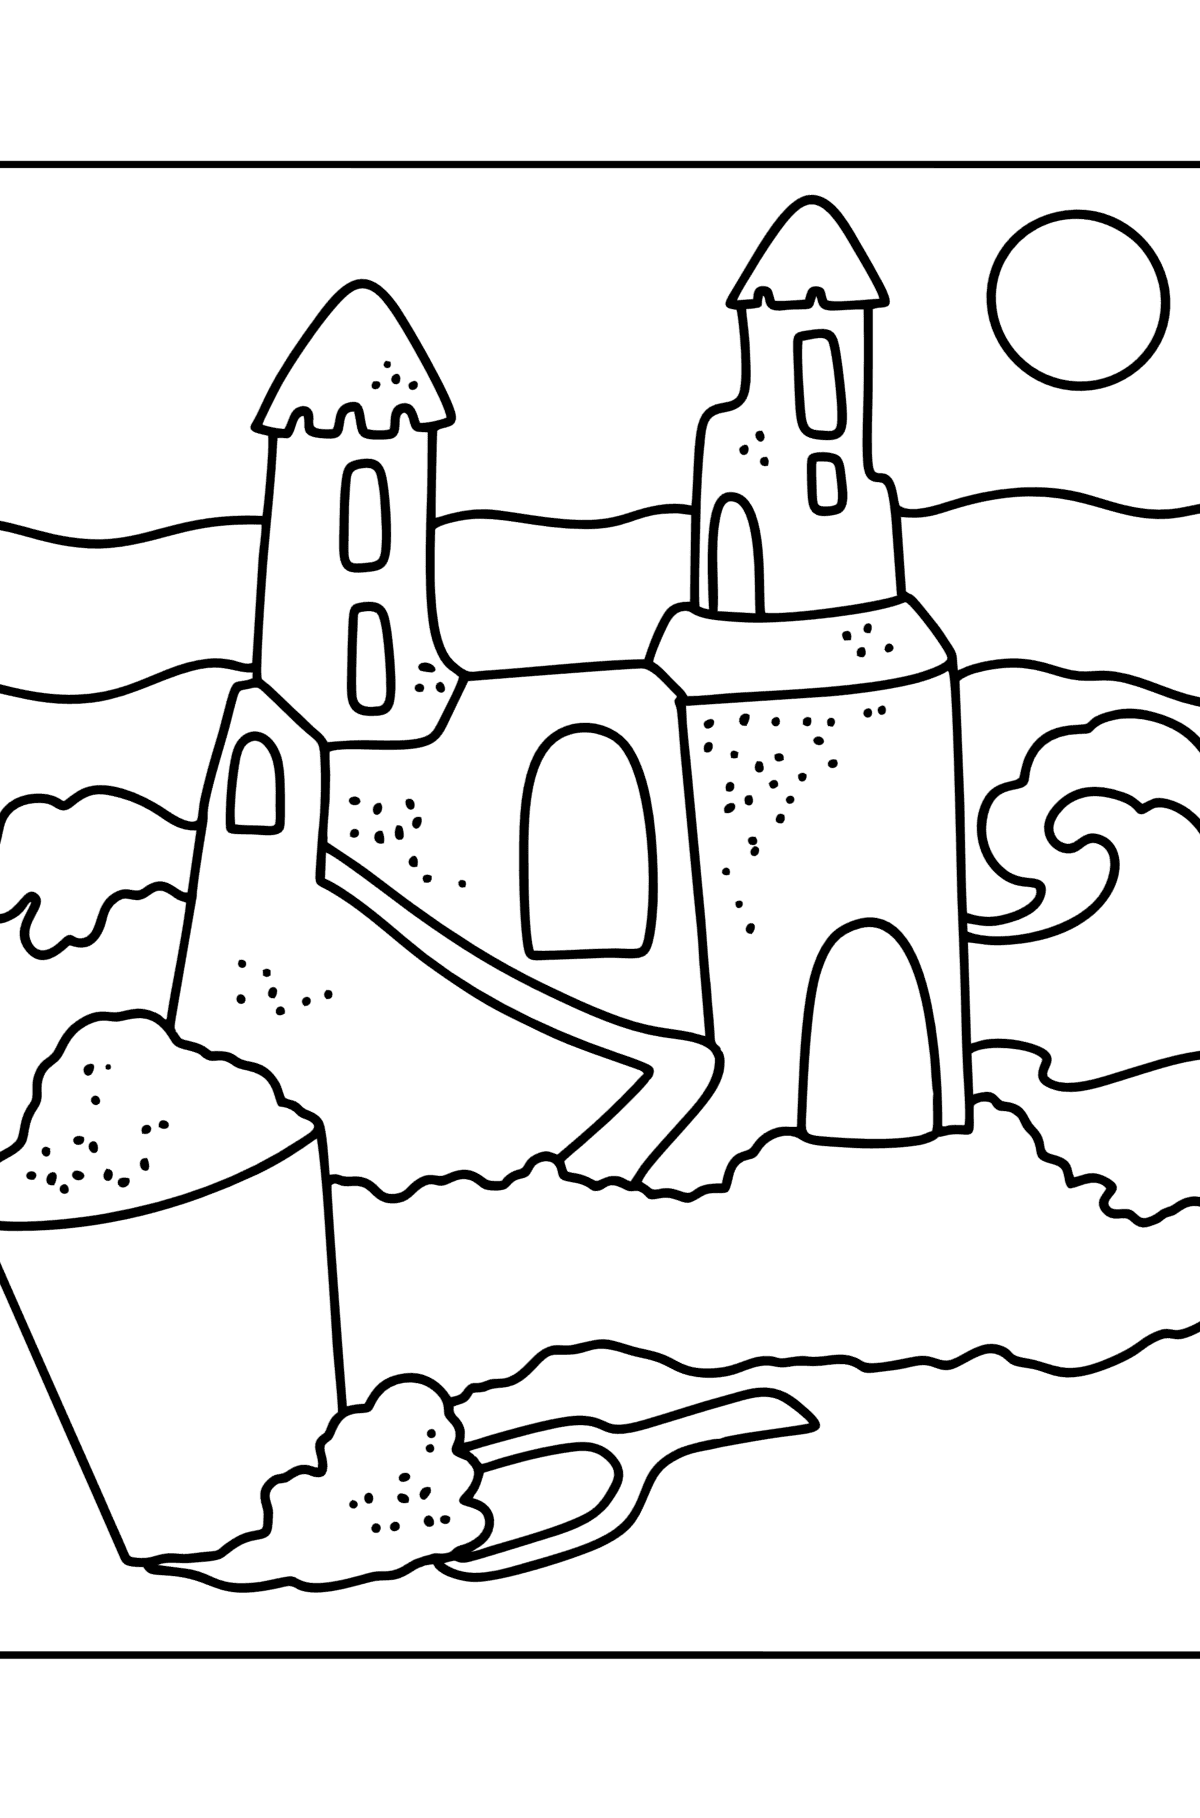 Disegno da colorare Estate - Castello di sabbia - Disegni da colorare per bambini